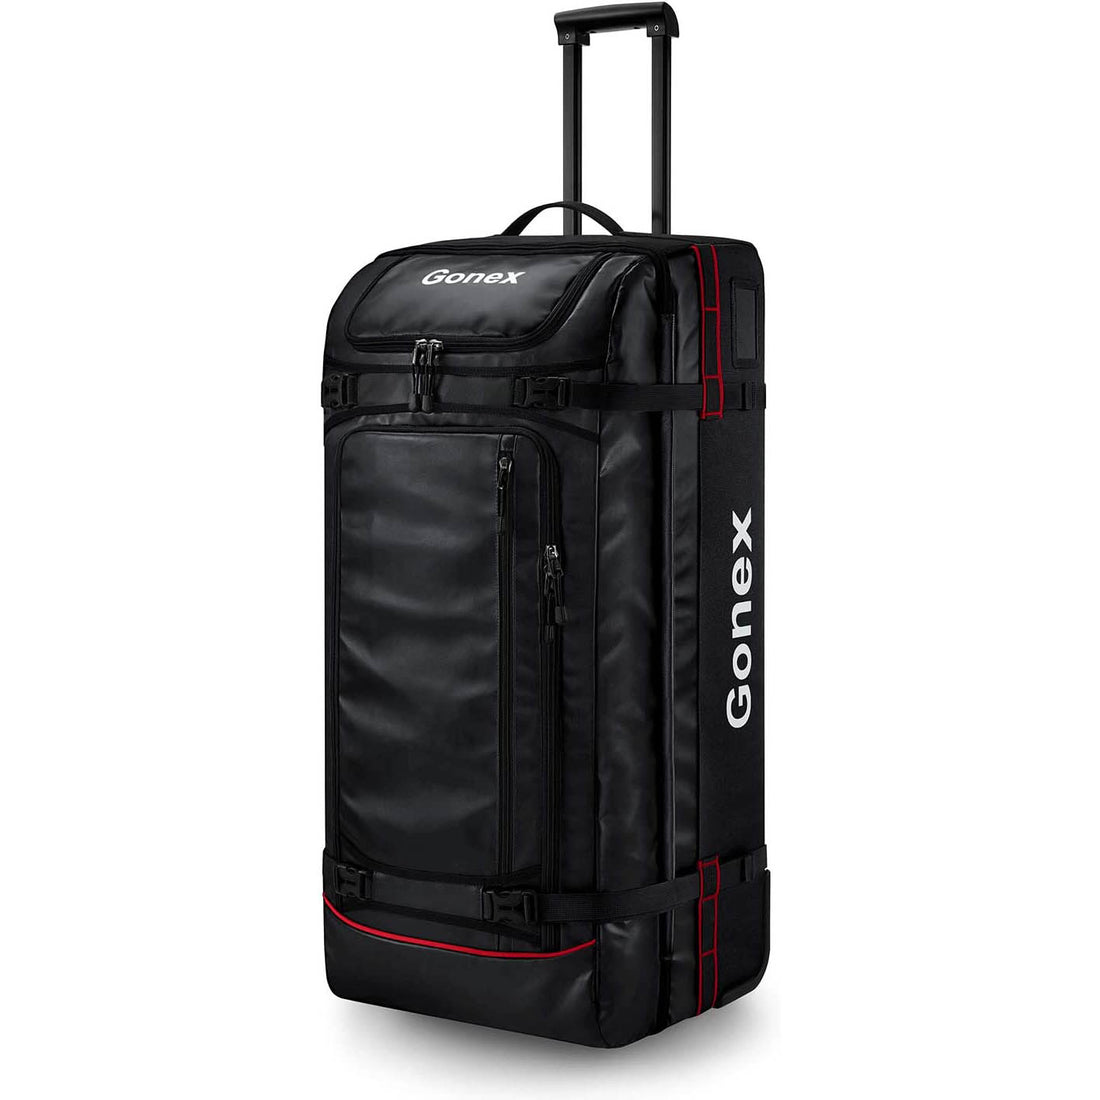 Shop Gonex Travel Duffel Bags, Outdoor Sports Gear & Fitness Equipment